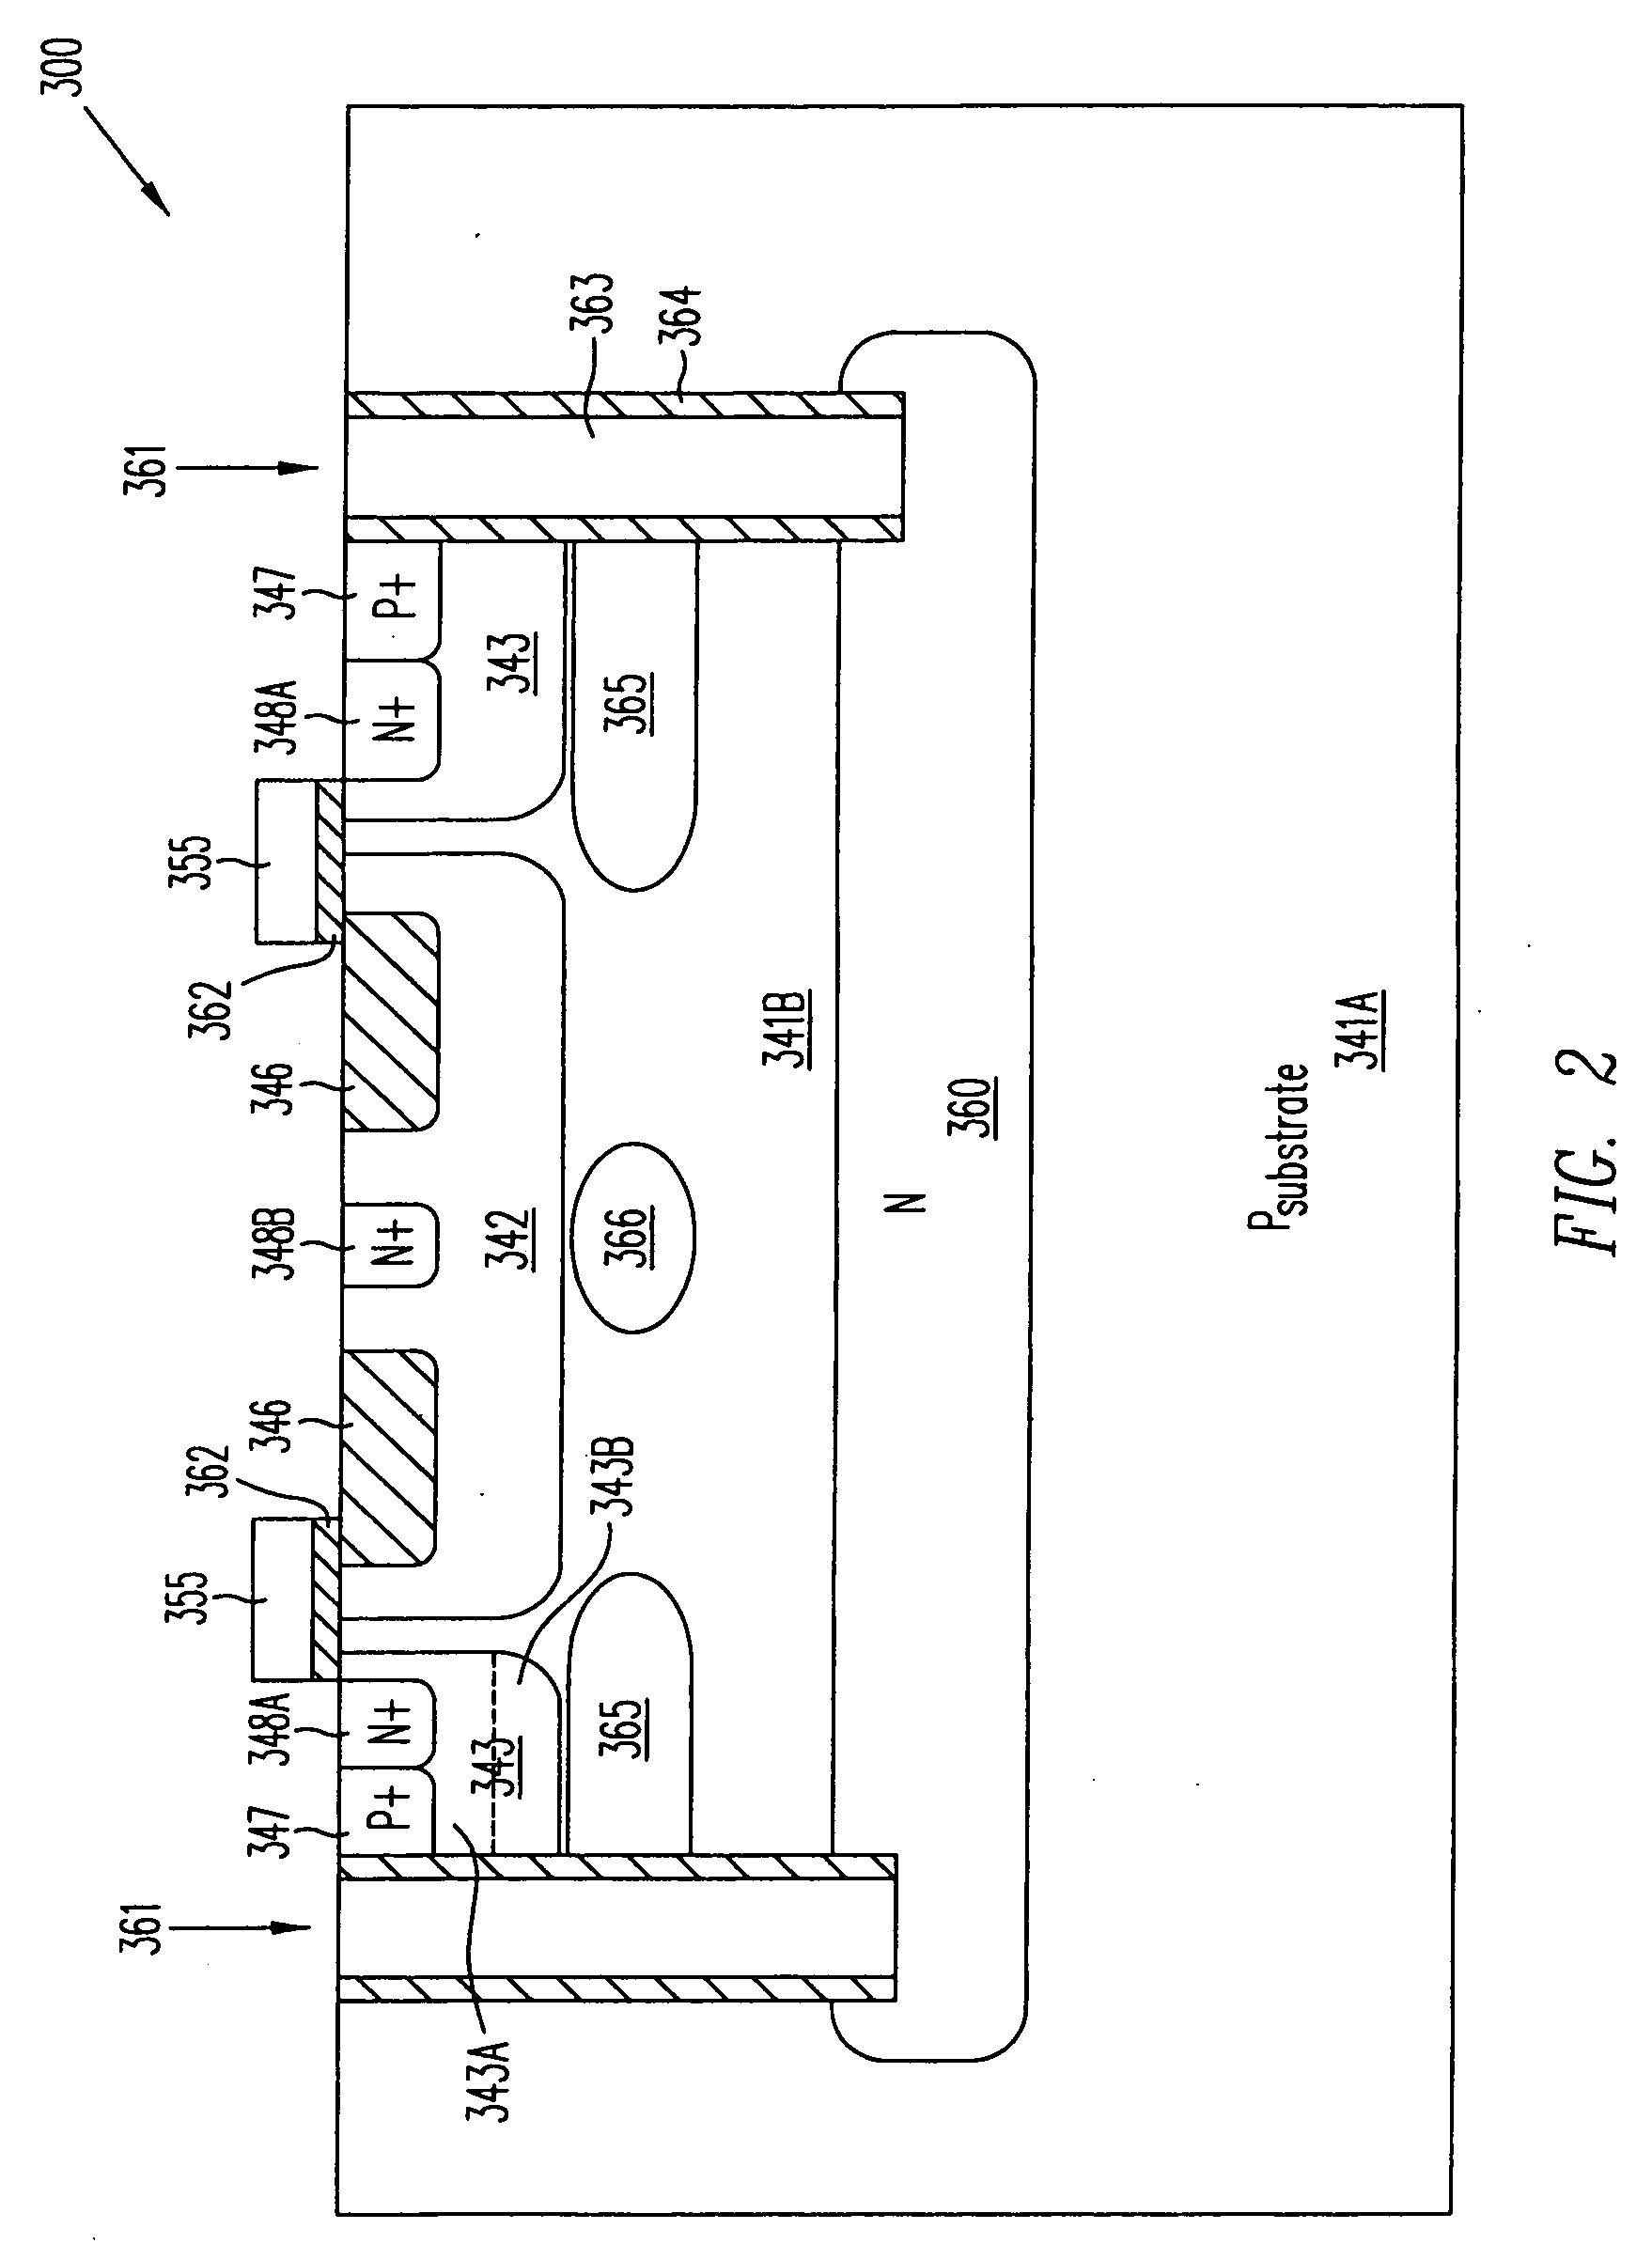 Isolated quasi-vertical DMOS transistor